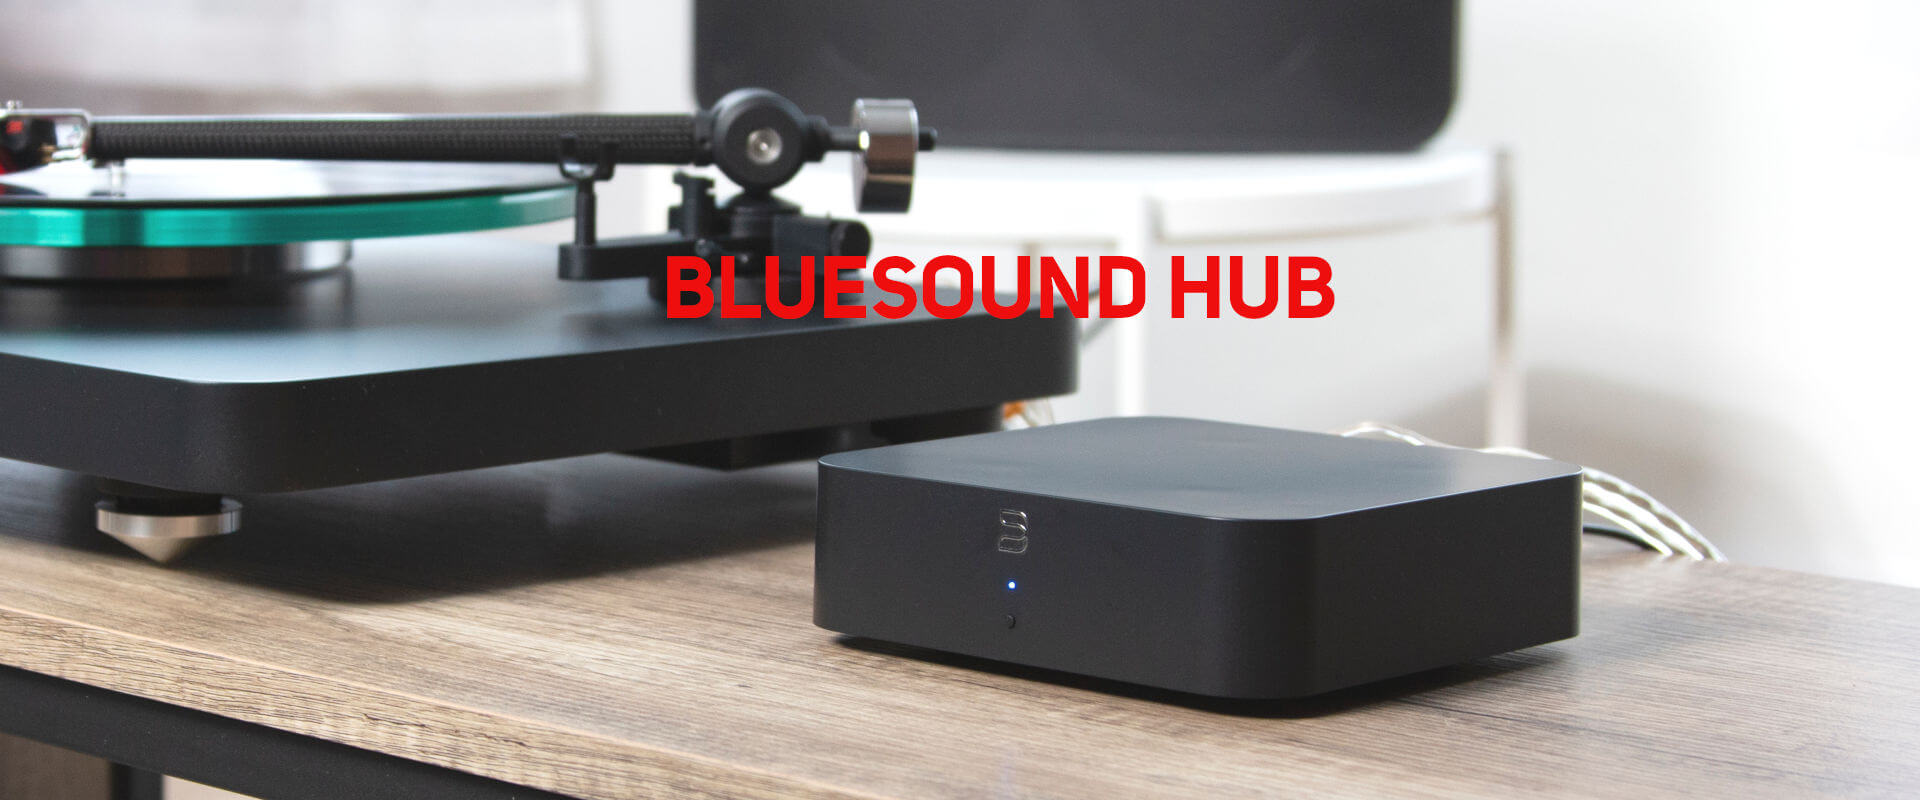 bluesound hub